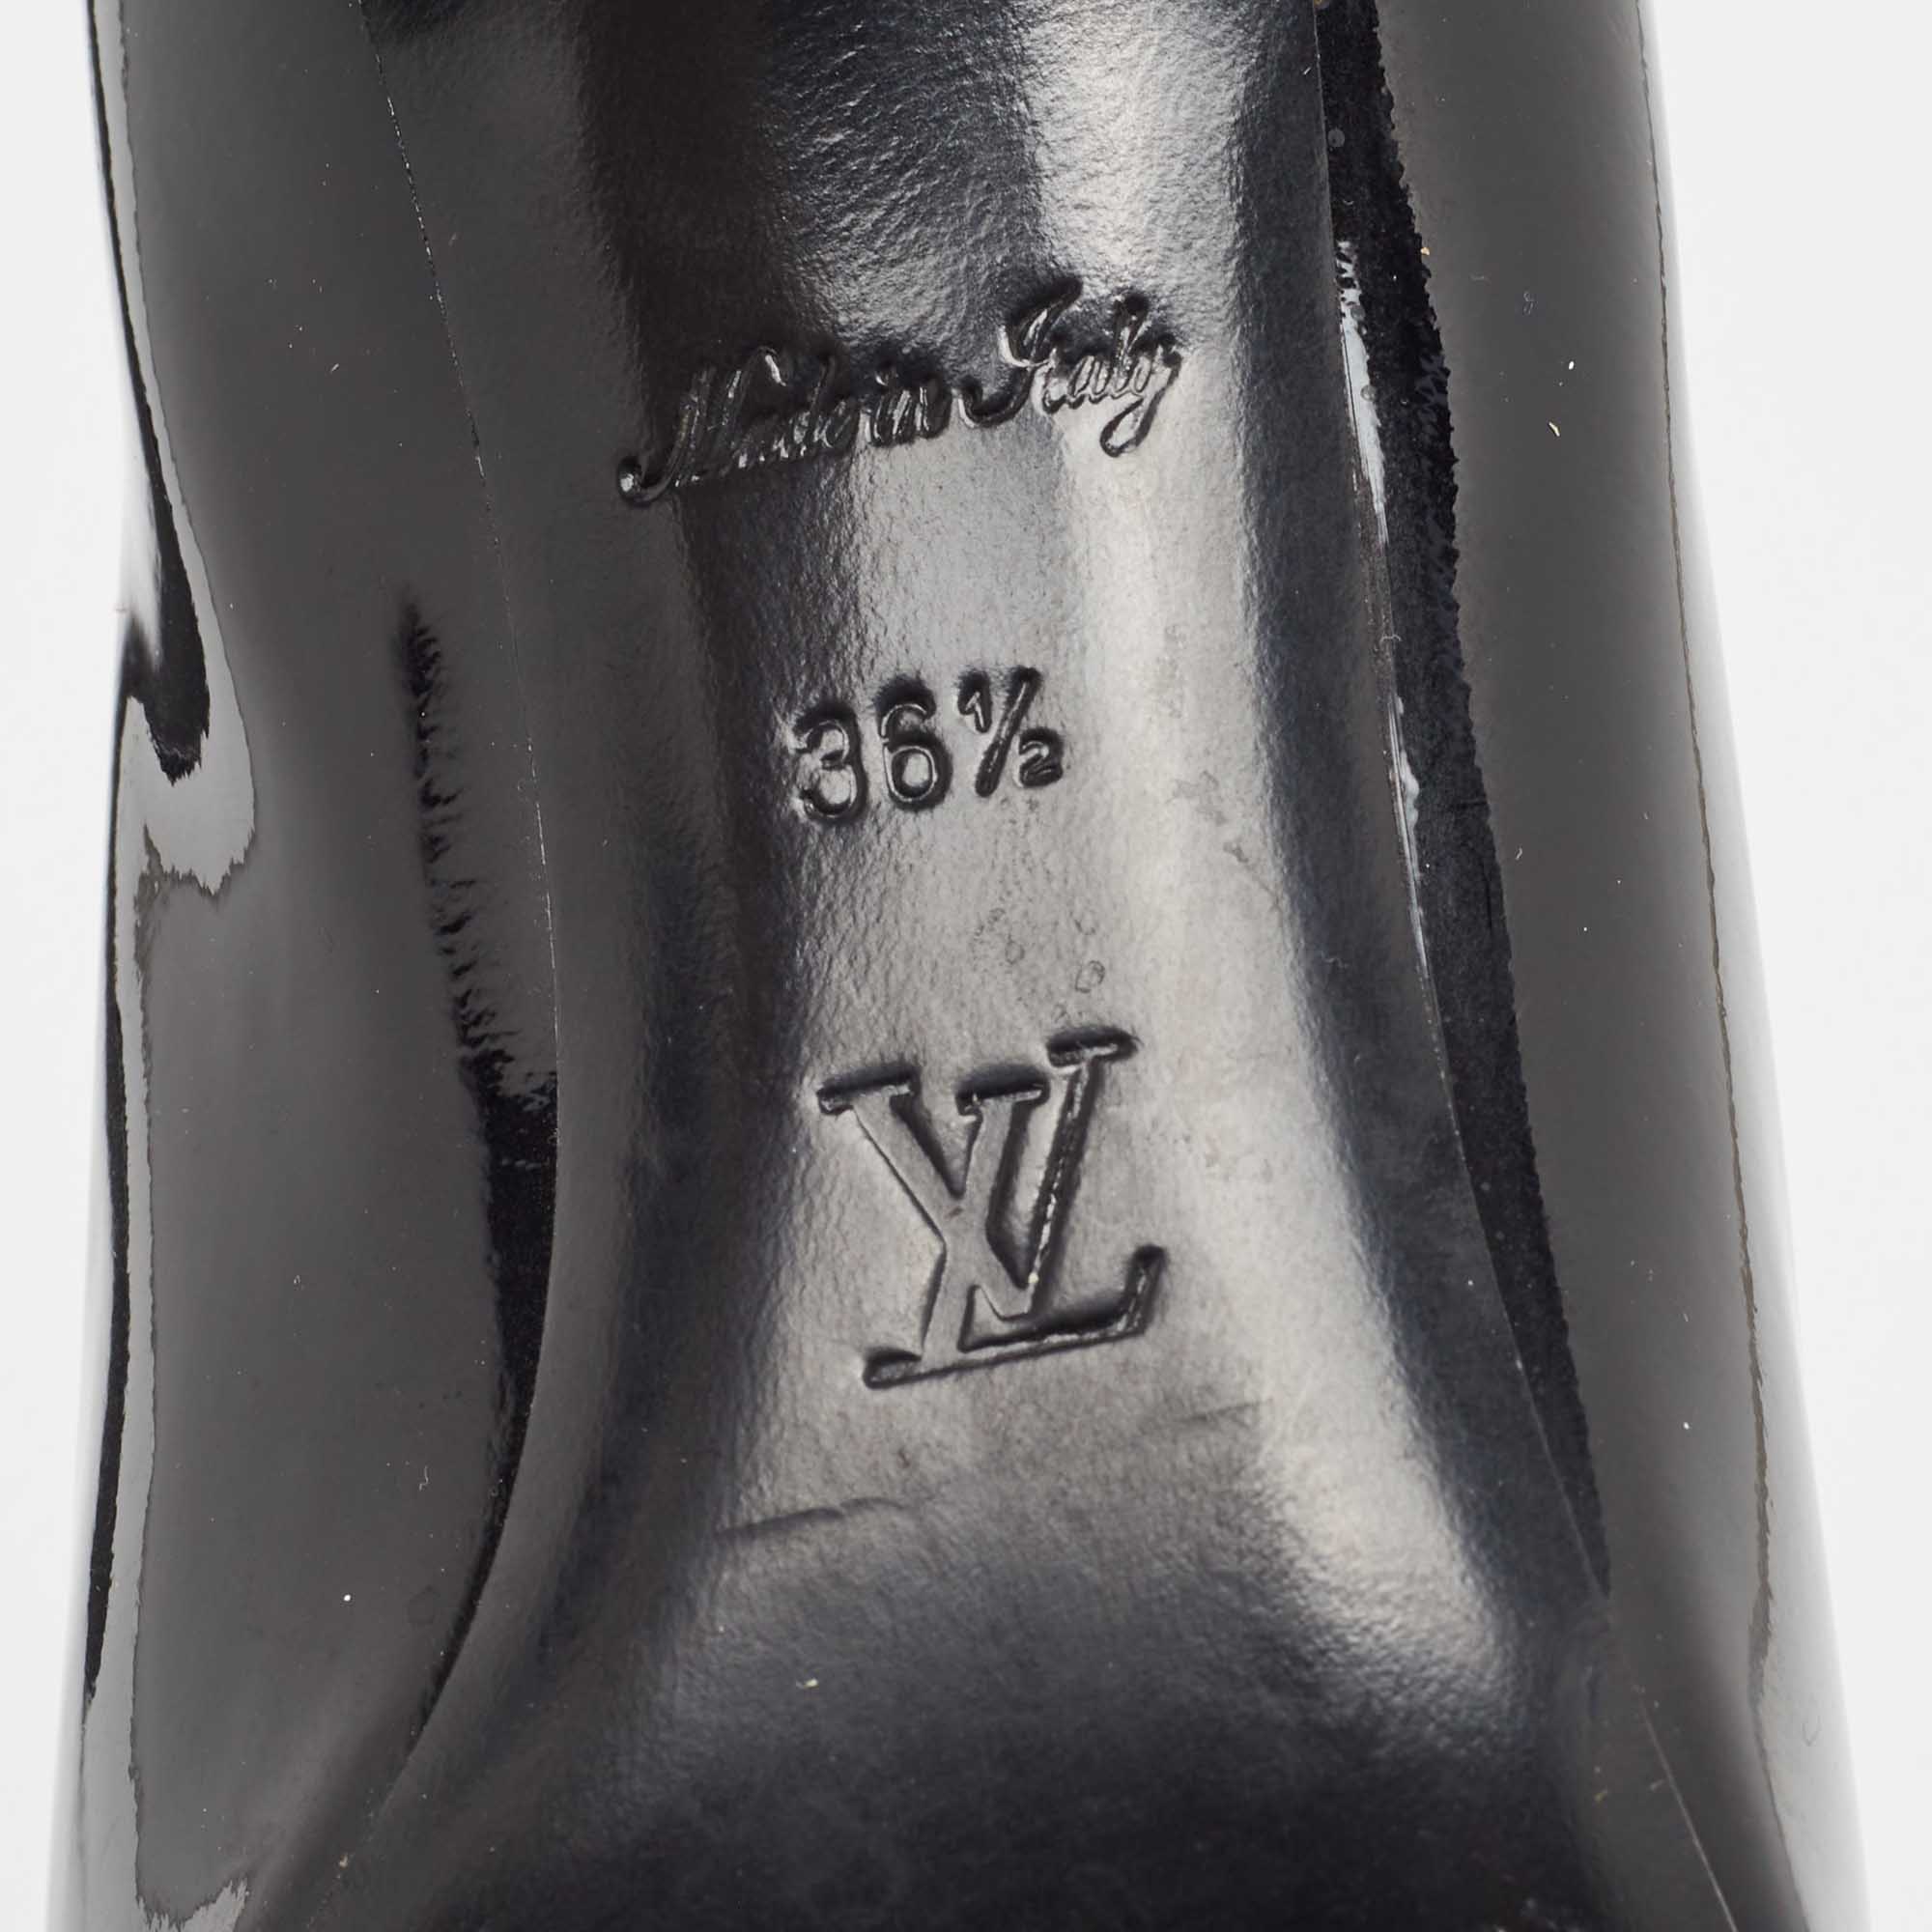 Louis Vuitton Black Patent Leather Fiance Pumps Size 36.5